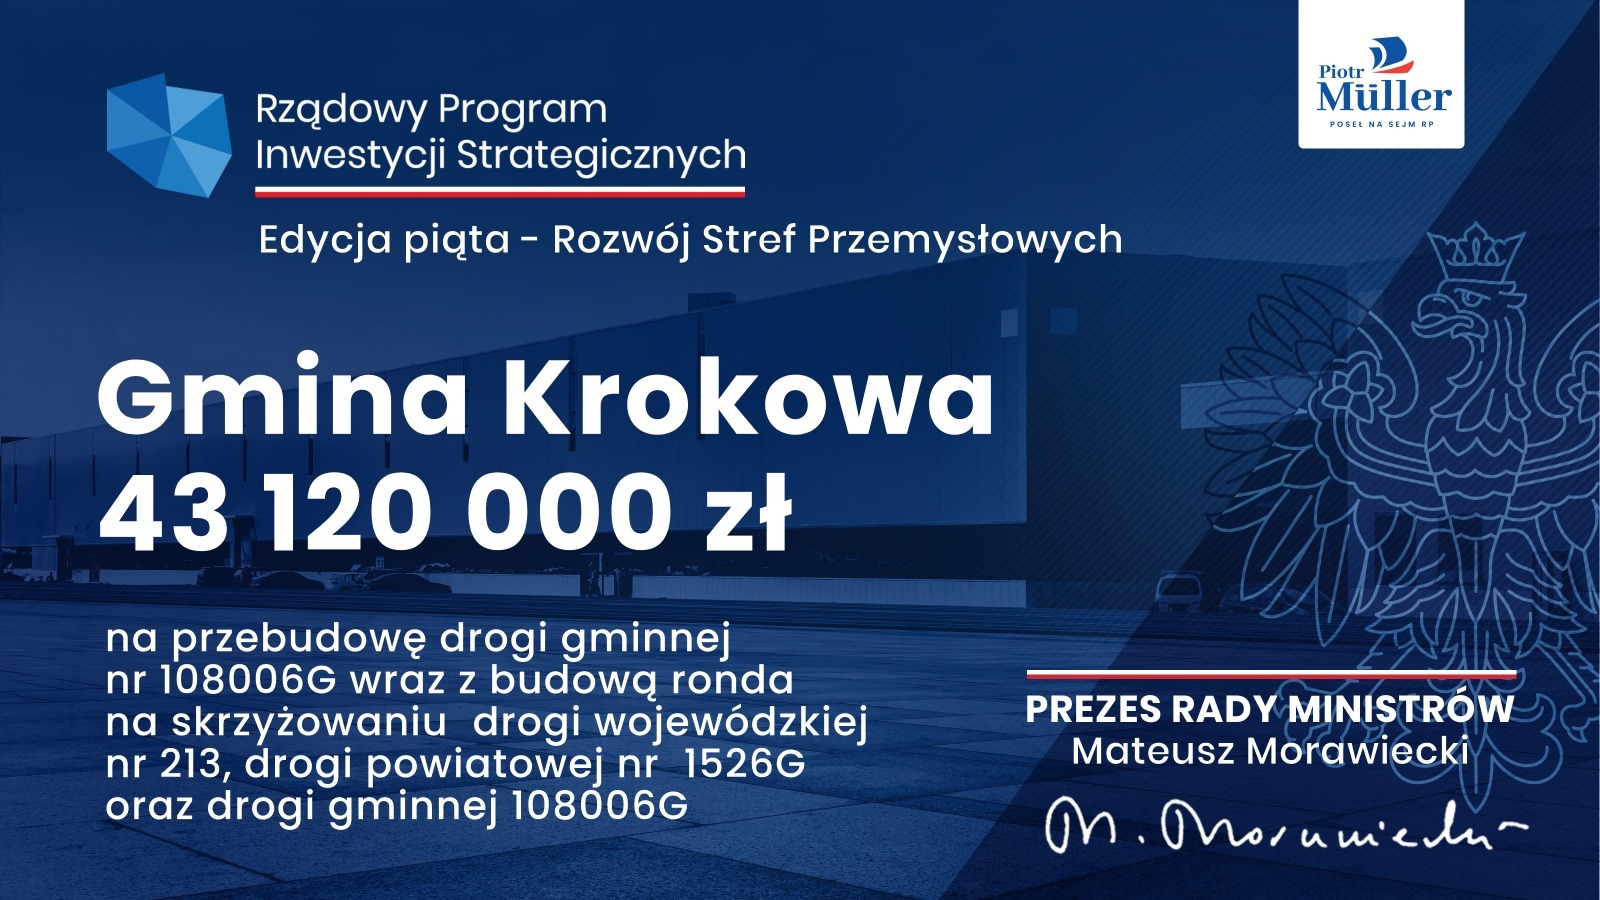 Gmina Krokowa otrzymała ponad 43 mln zł w ramach wsparcia na rozwój stref przemysłowych!